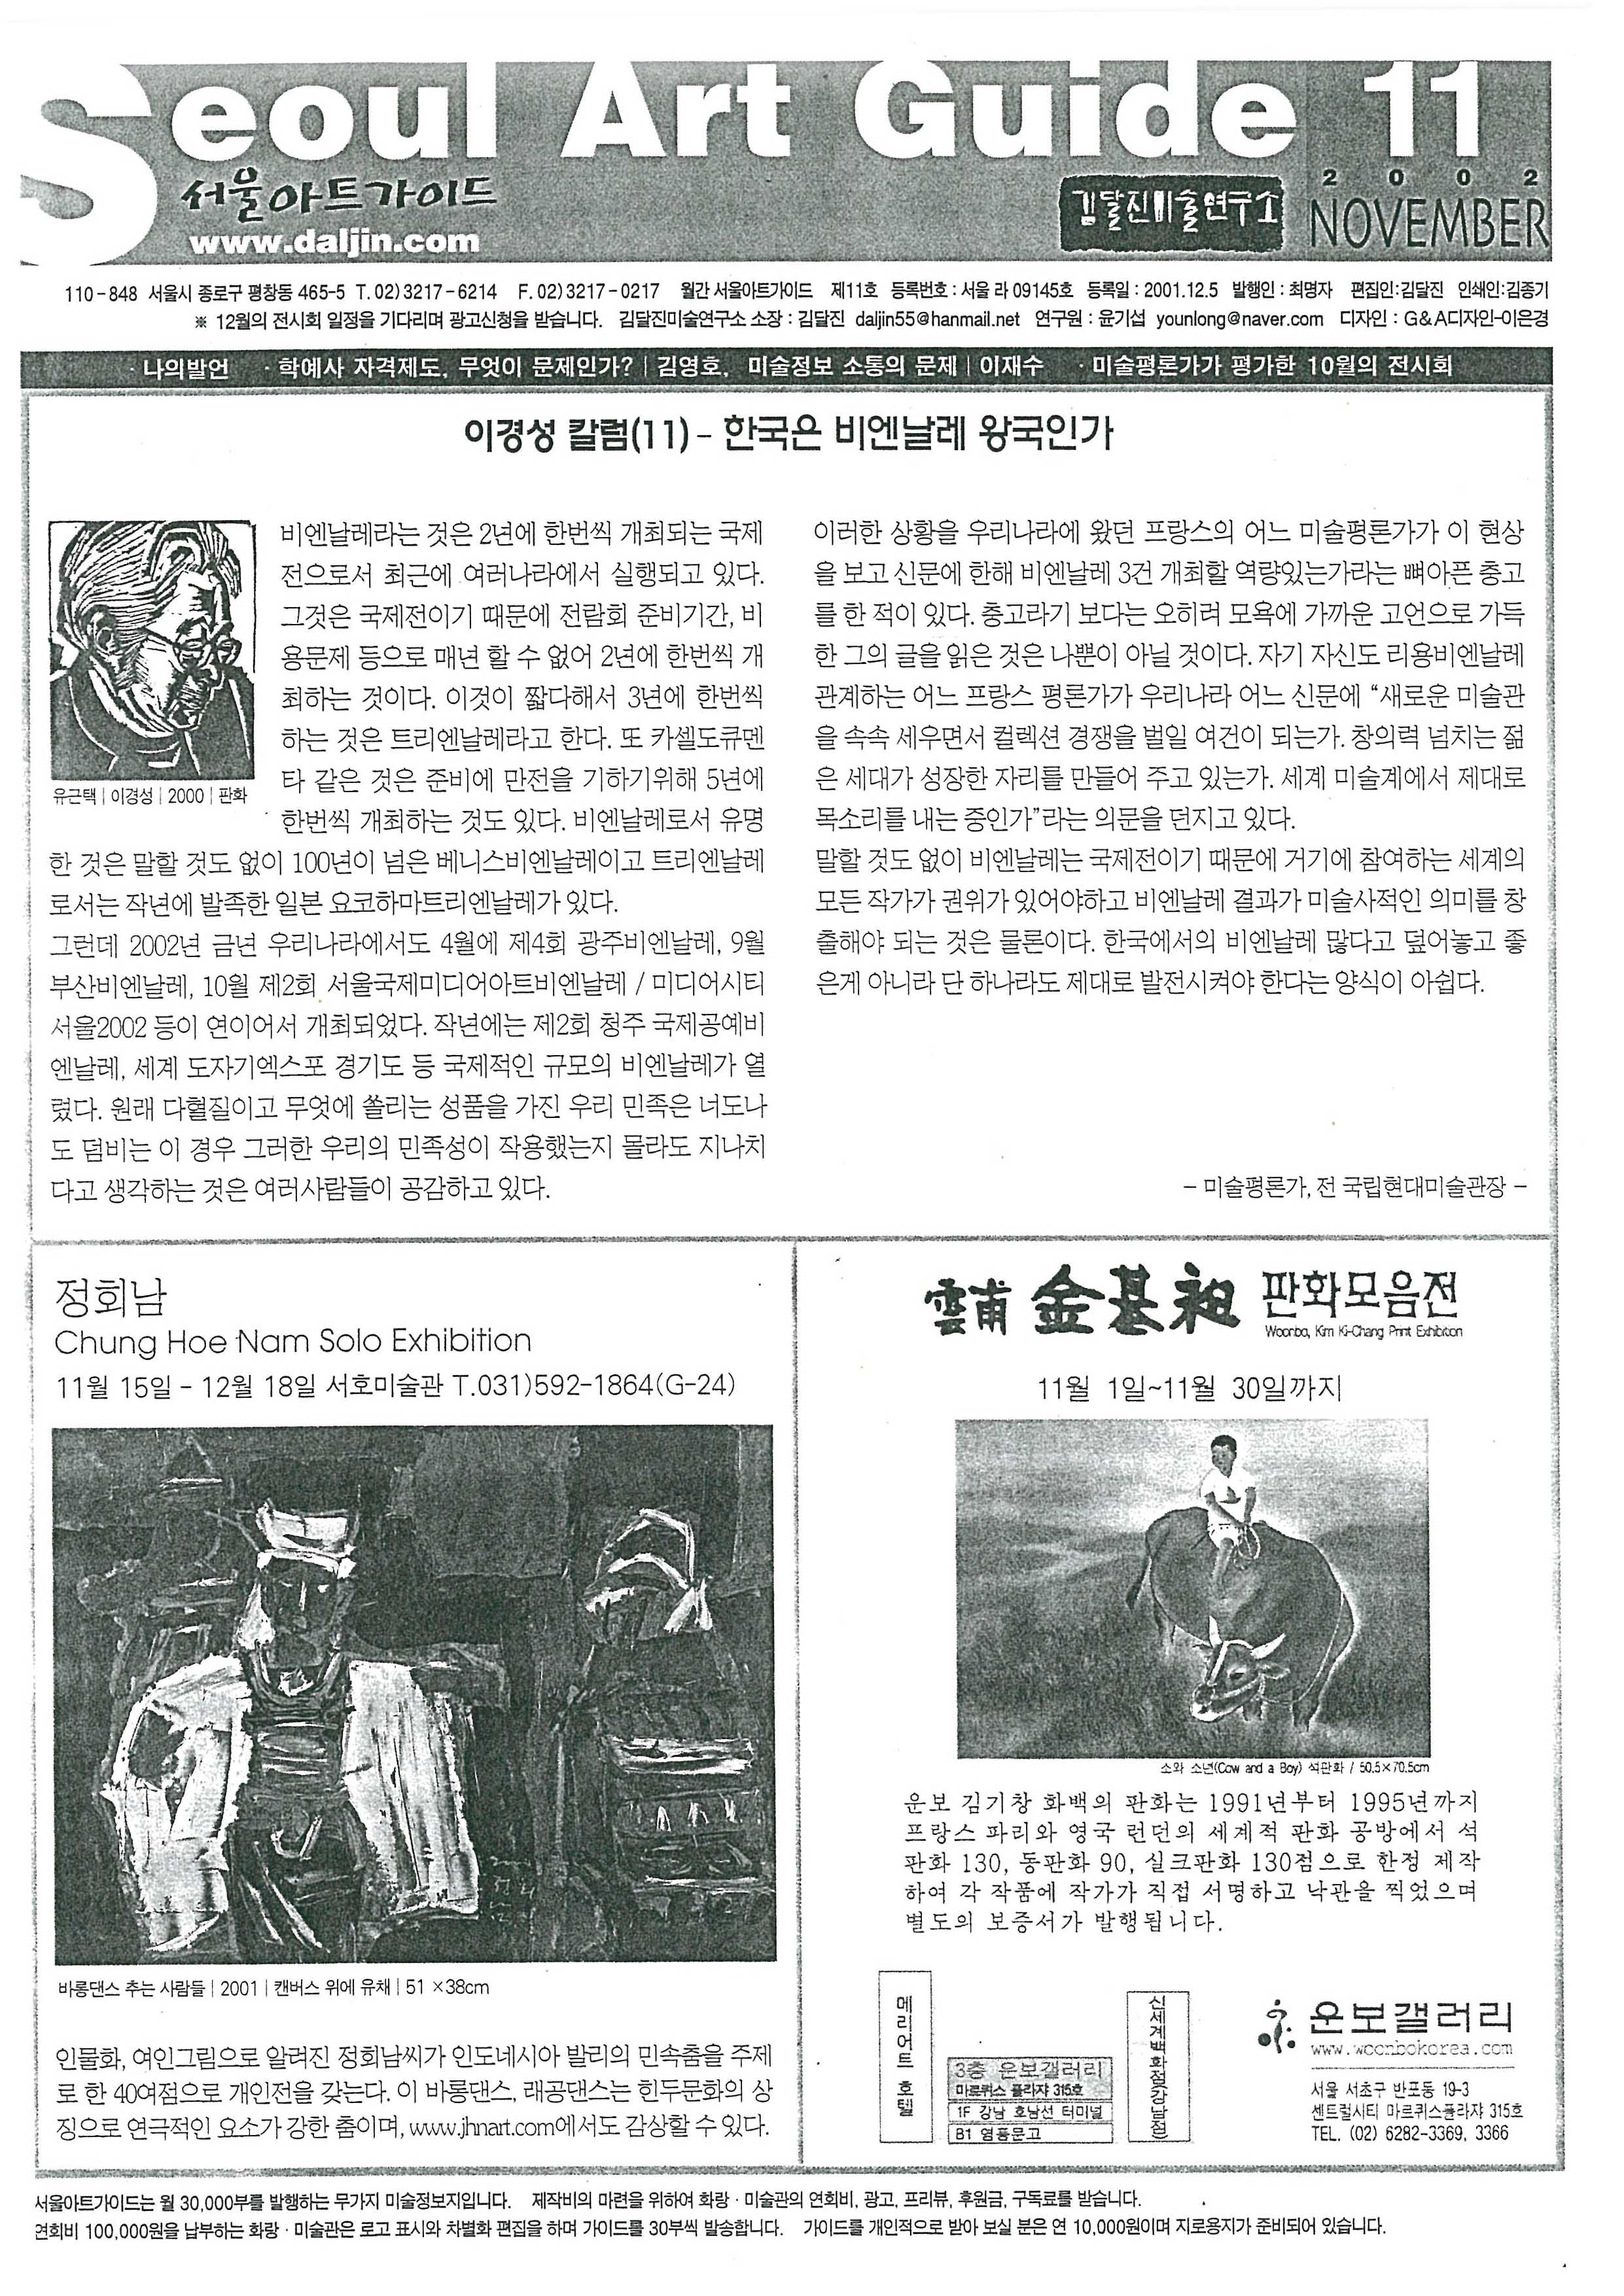 「60년대 이응노 추상화전, 묵(墨)과 색(色)」, 『Seoul Art Guide』